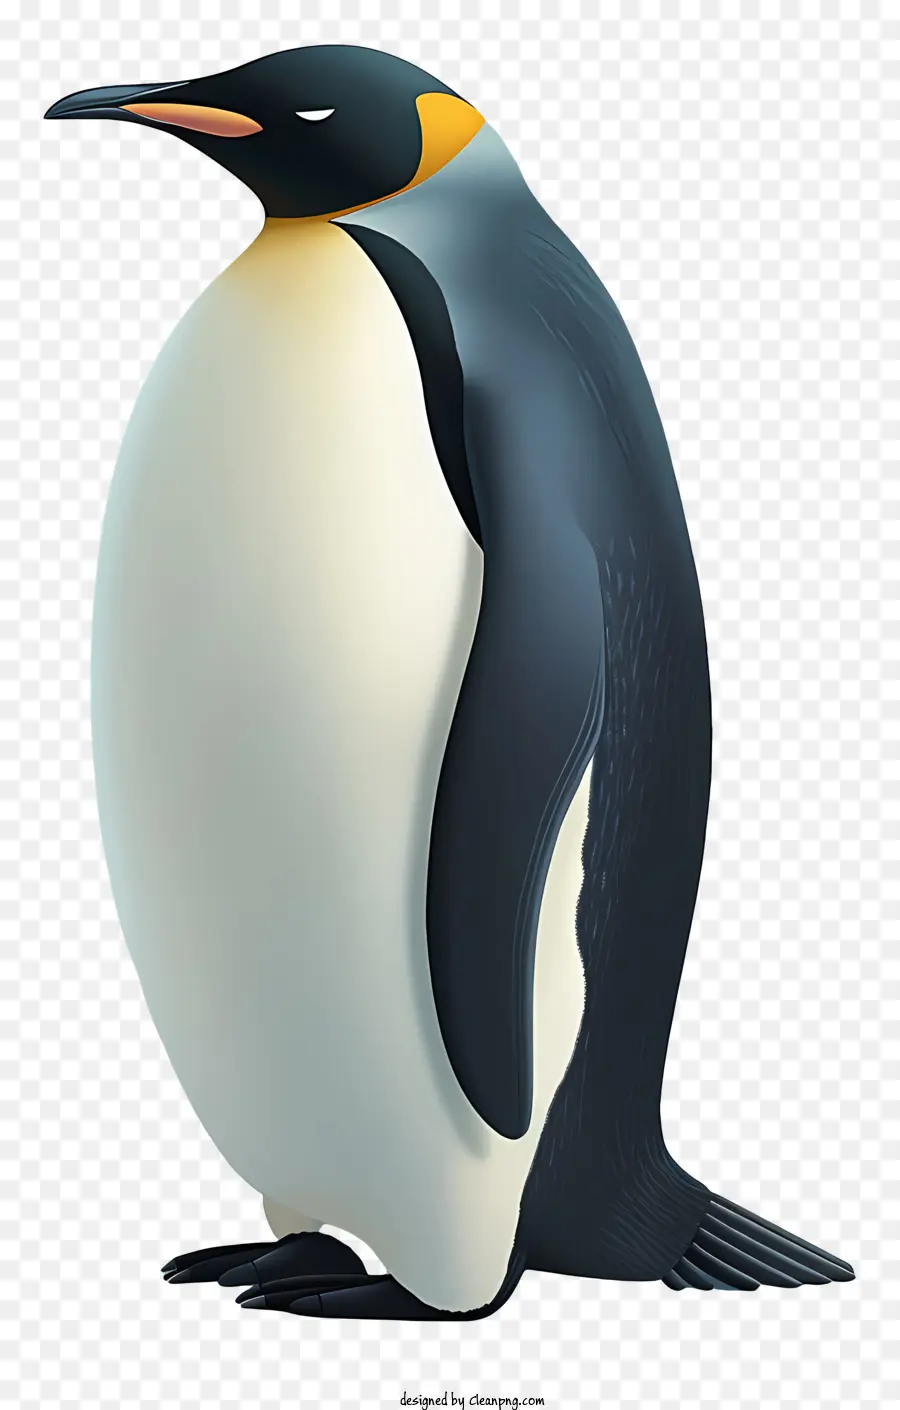 Pinguino - Pinguino rotondo con becco lungo